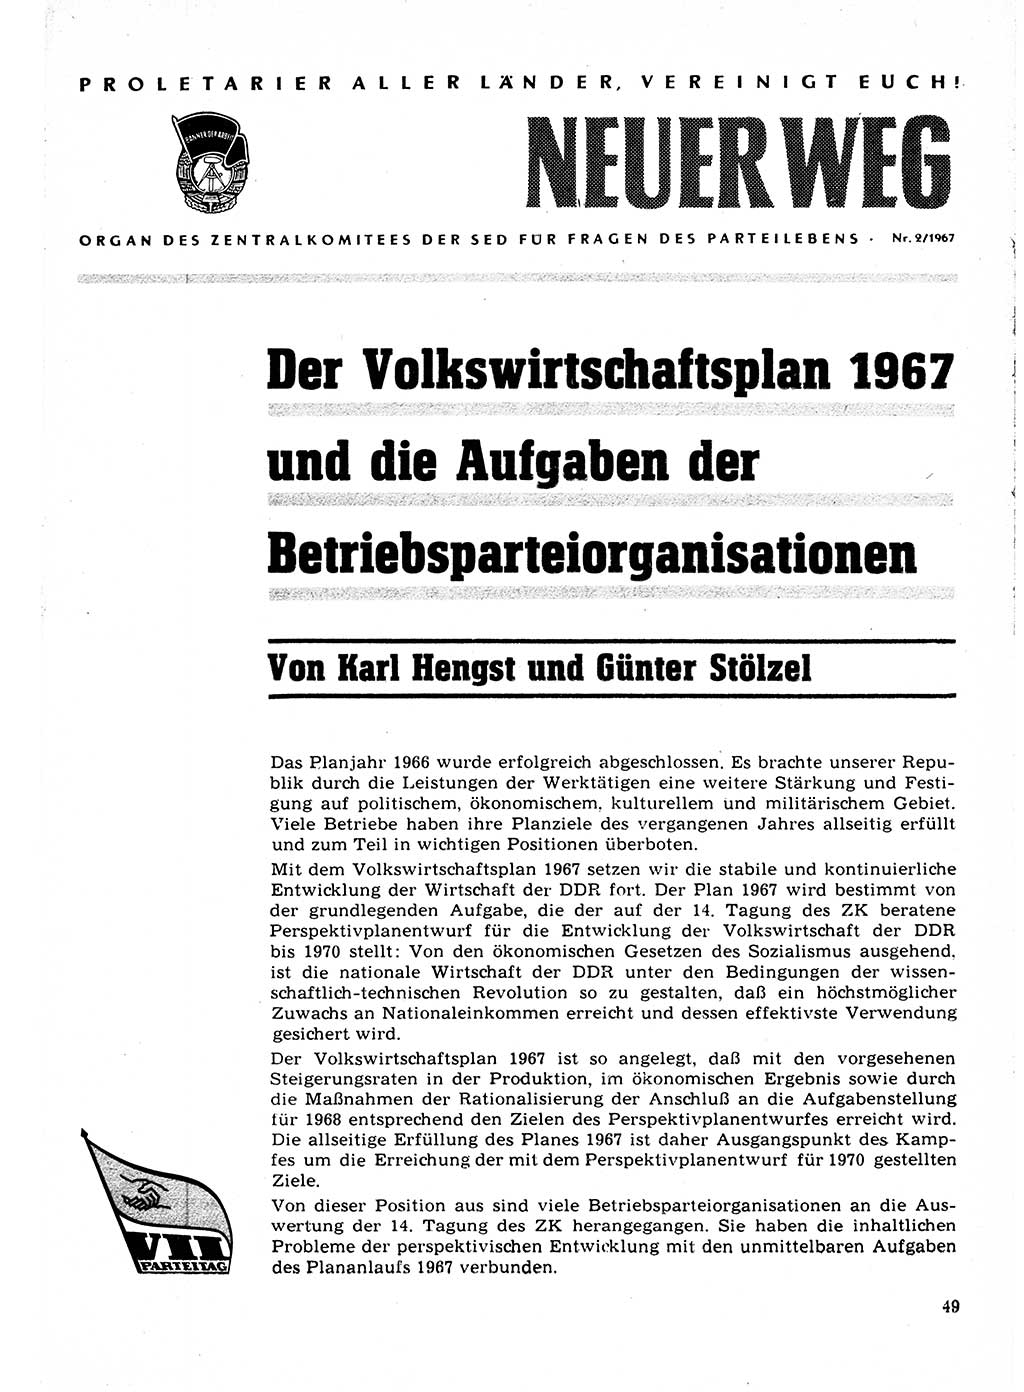 Neuer Weg (NW), Organ des Zentralkomitees (ZK) der SED (Sozialistische Einheitspartei Deutschlands) für Fragen des Parteilebens, 22. Jahrgang [Deutsche Demokratische Republik (DDR)] 1967, Seite 49 (NW ZK SED DDR 1967, S. 49)